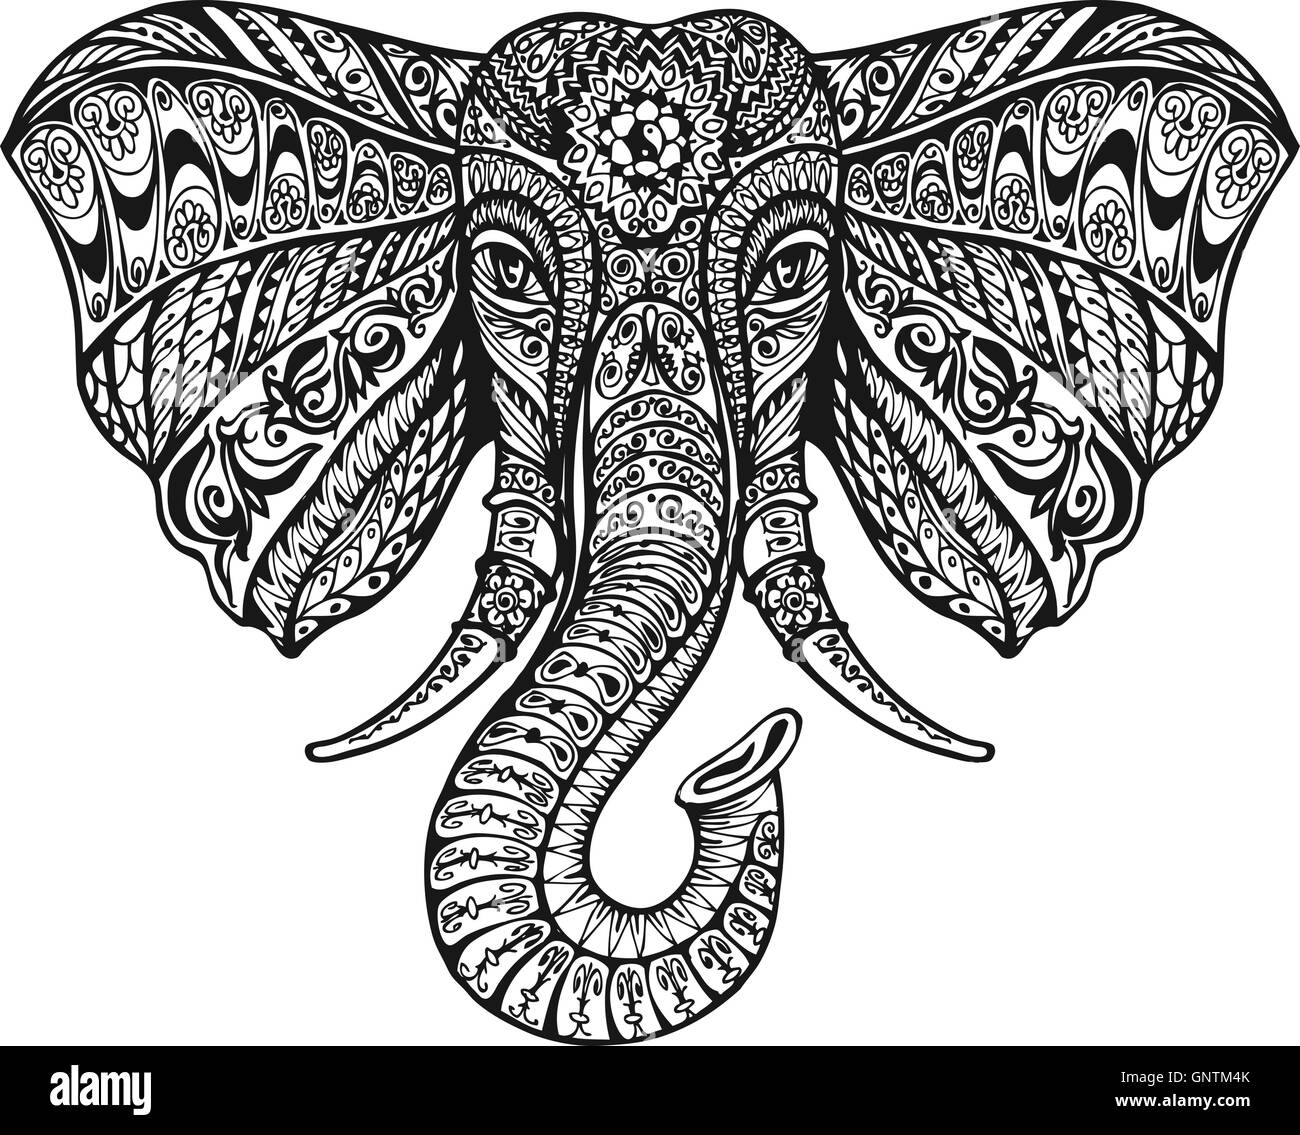 Ethnische geschmückten Elefanten. Vektor-illustration Stock Vektor